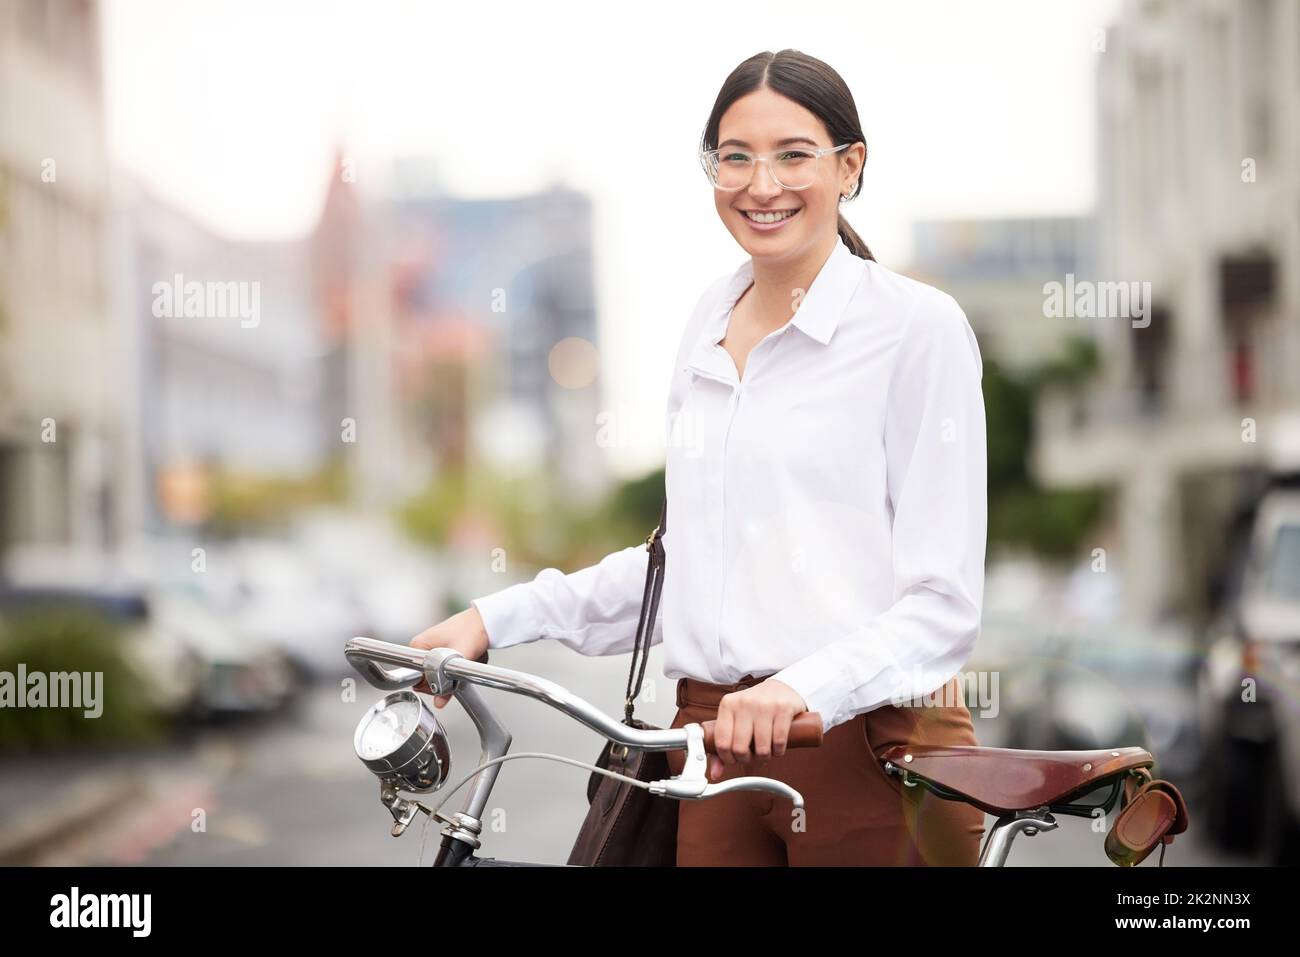 Sie leistet ihren Beitrag zur Reduzierung von Luftschadstoffen. Porträt einer jungen Frau, die mit ihrem Fahrrad die Stadt erkundet. Stockfoto